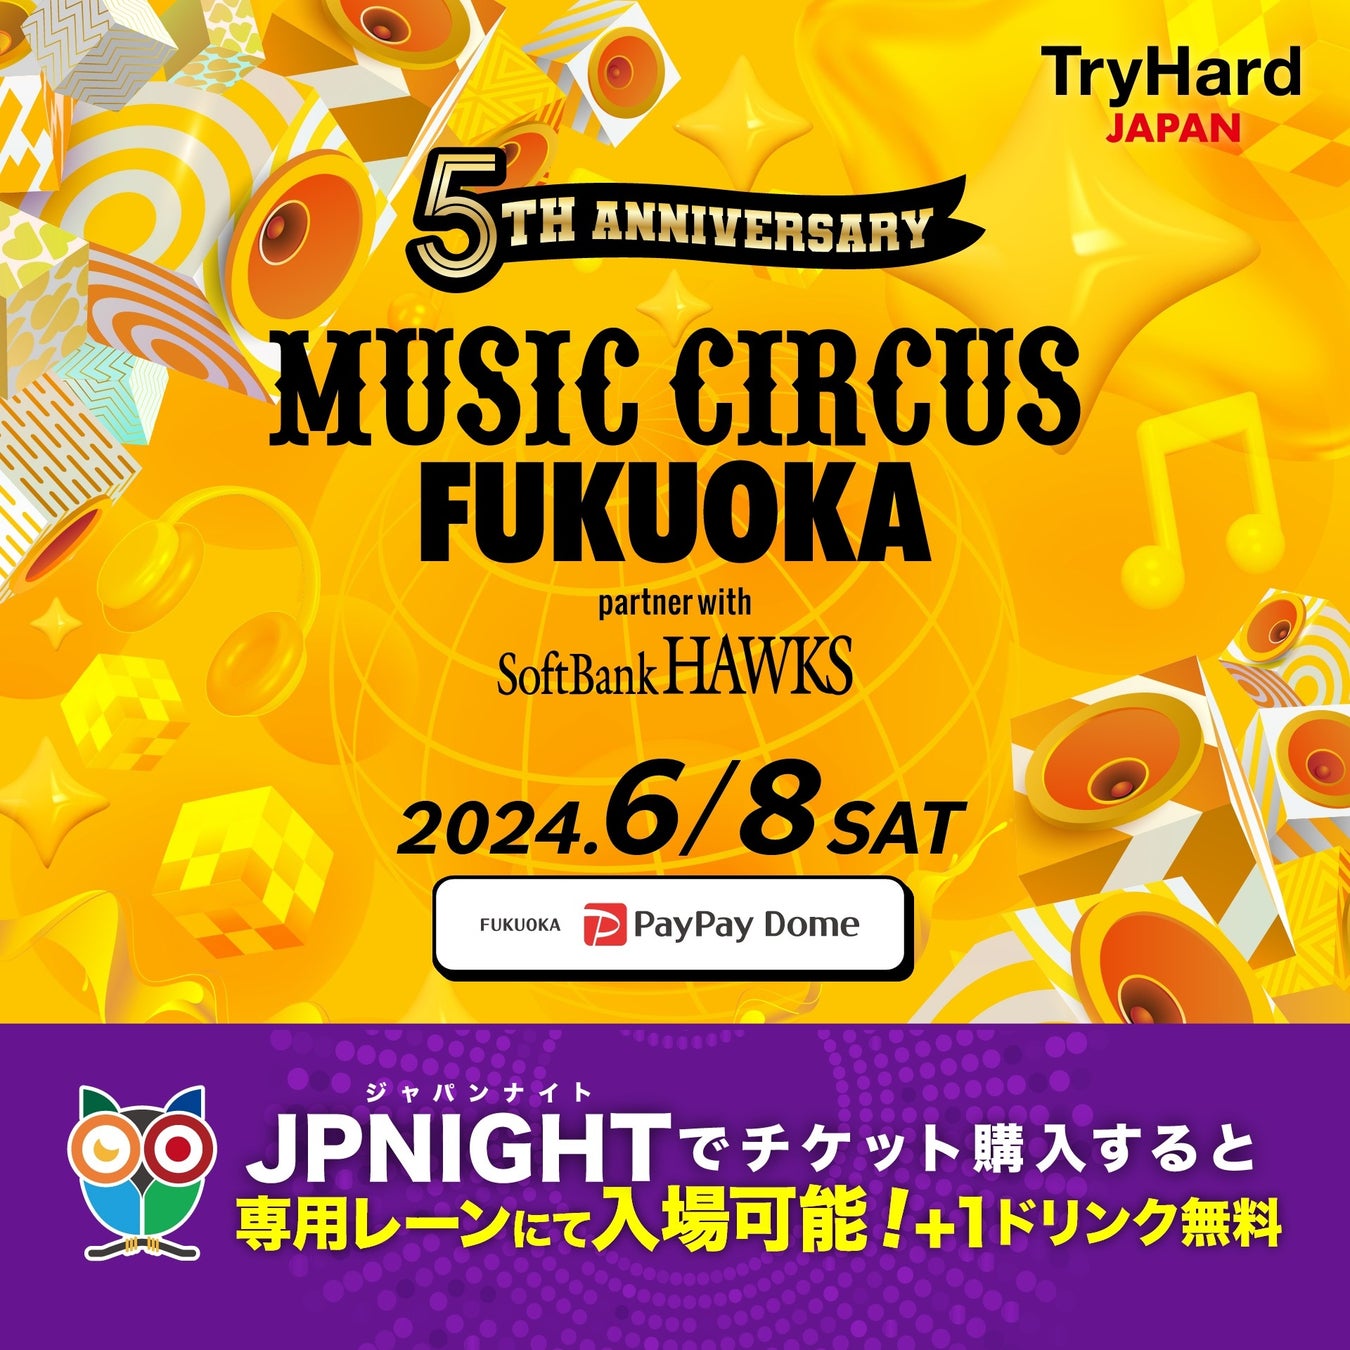 【専用レーンご案内+ワンドリンクサービス】MUSIC CIRCUS FUKUOKA 2024 partner with SoftBank HAWKS JP NIGH...